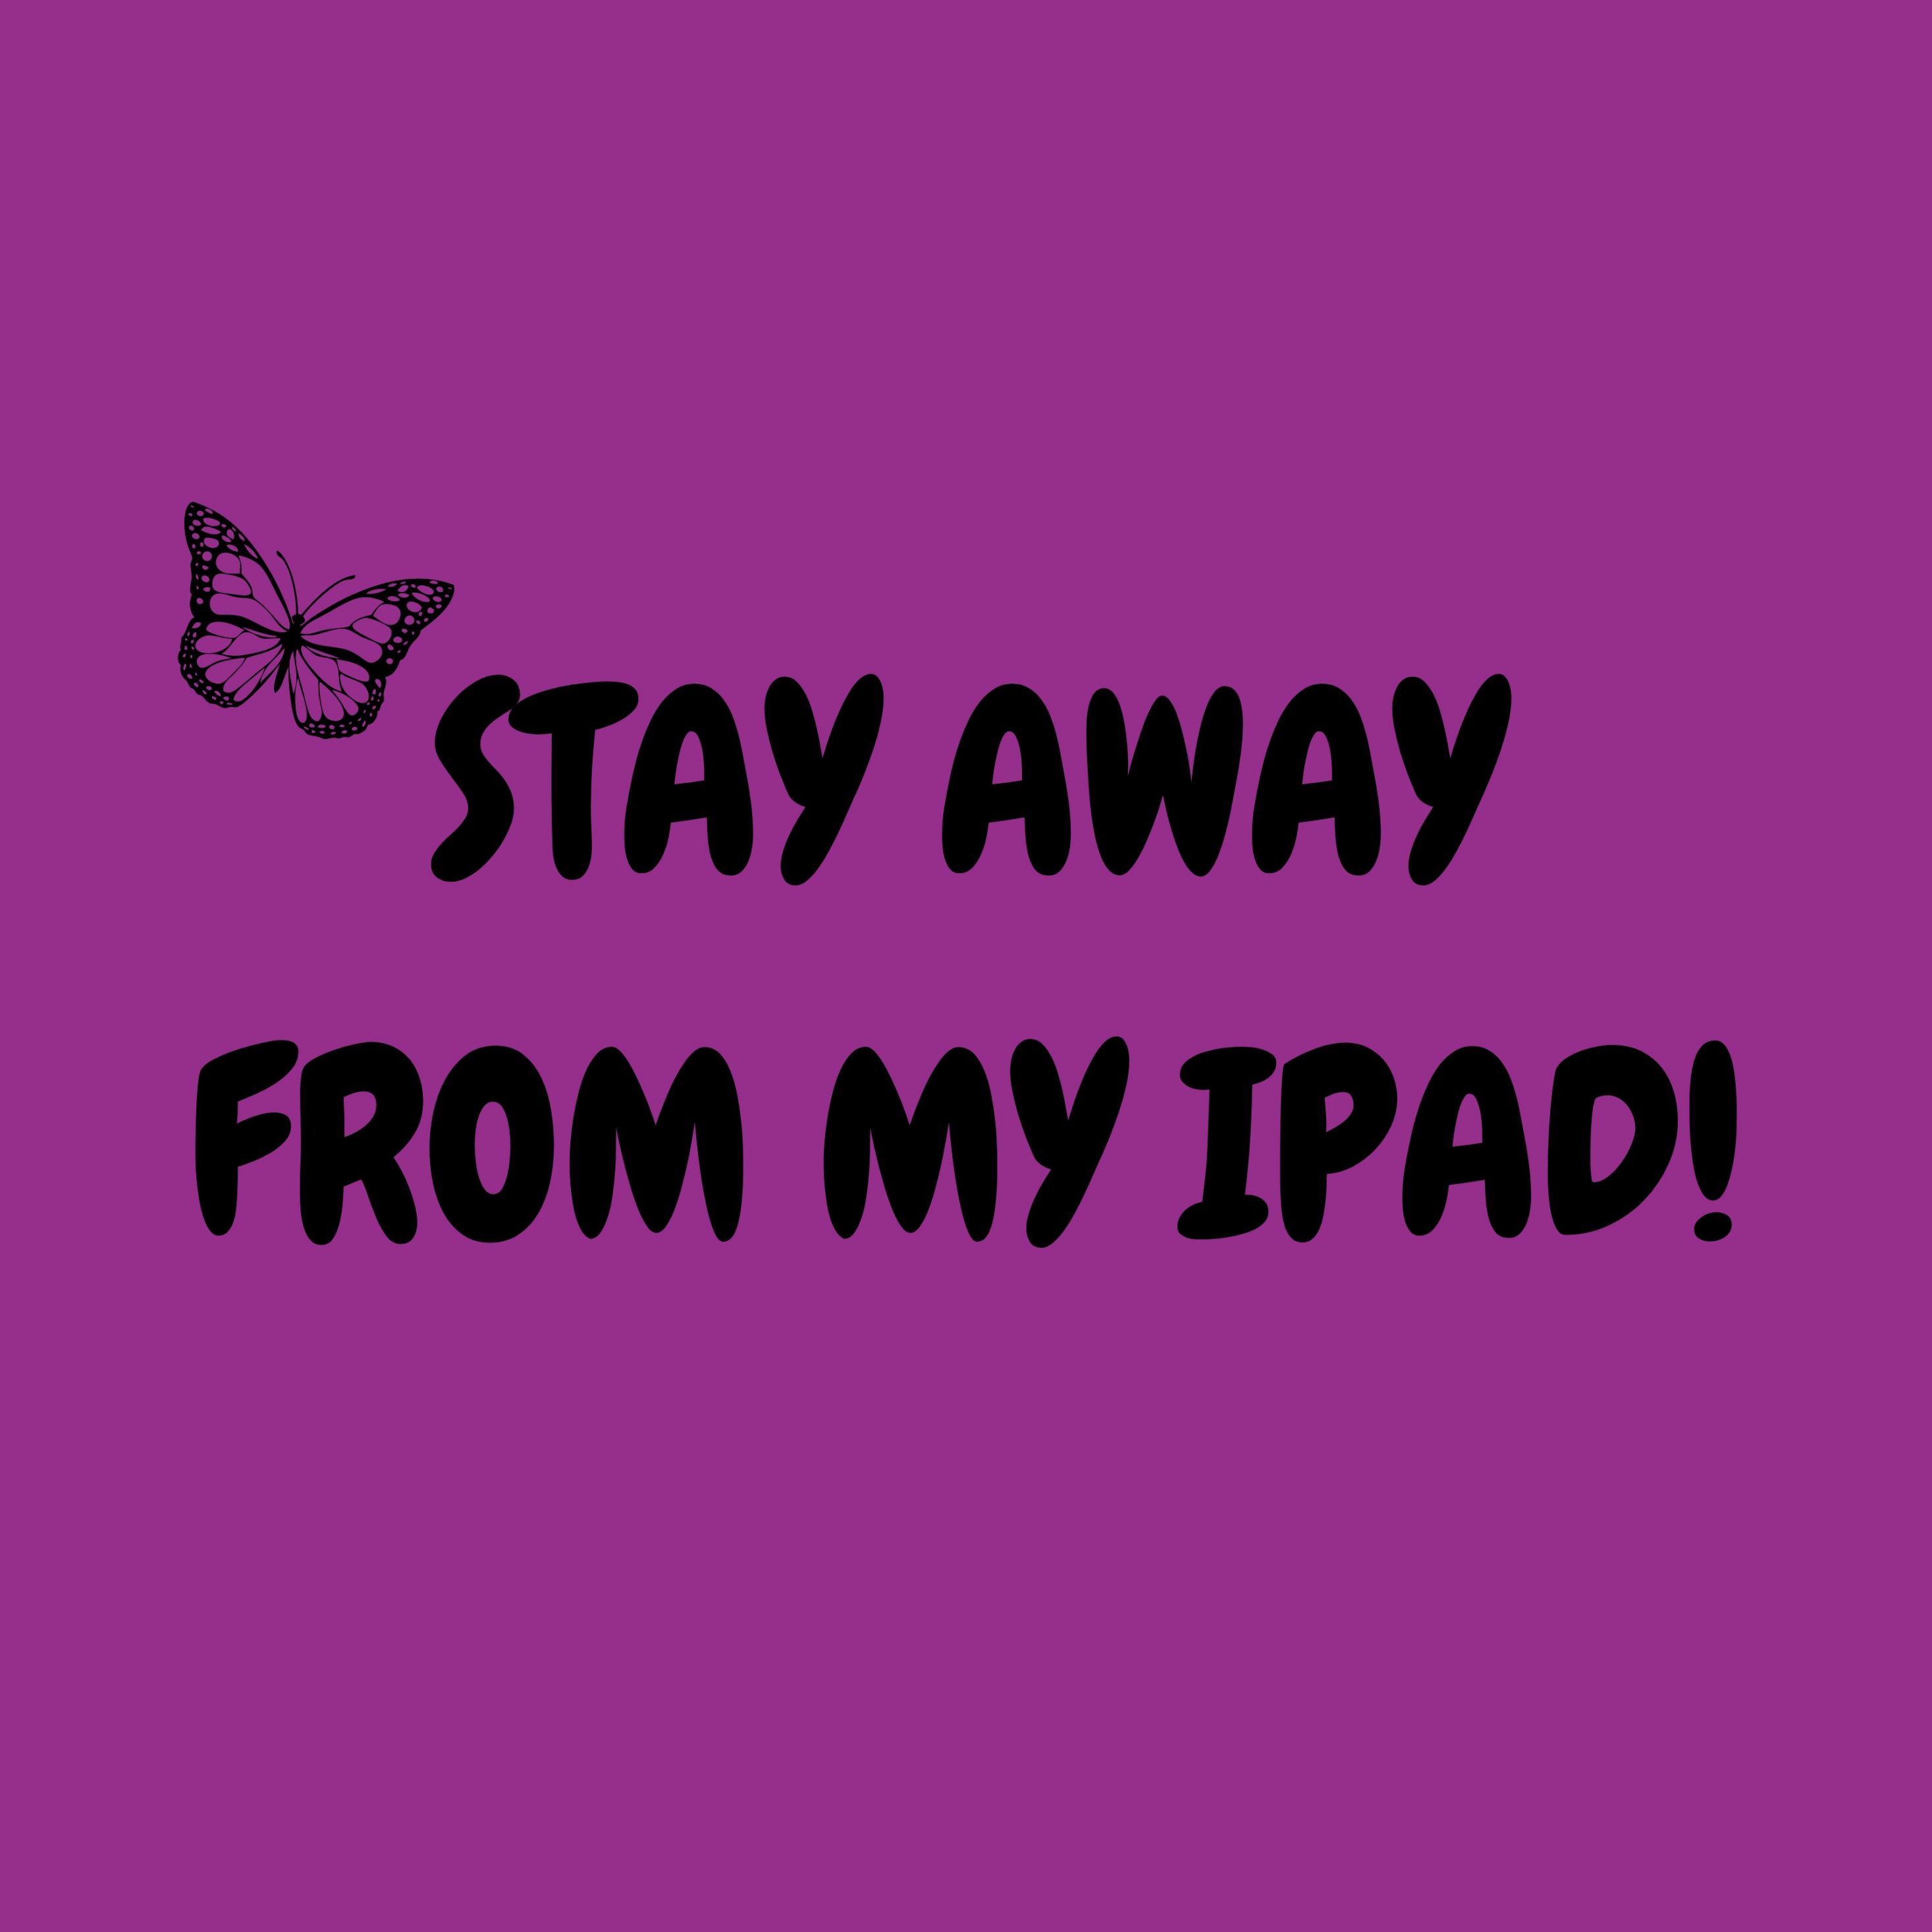 2934x2934 iOS iPad wallpaper 4k Stay Away From My Ipad Sign Ipad Wallpaper 2934x2934 pixels resolution